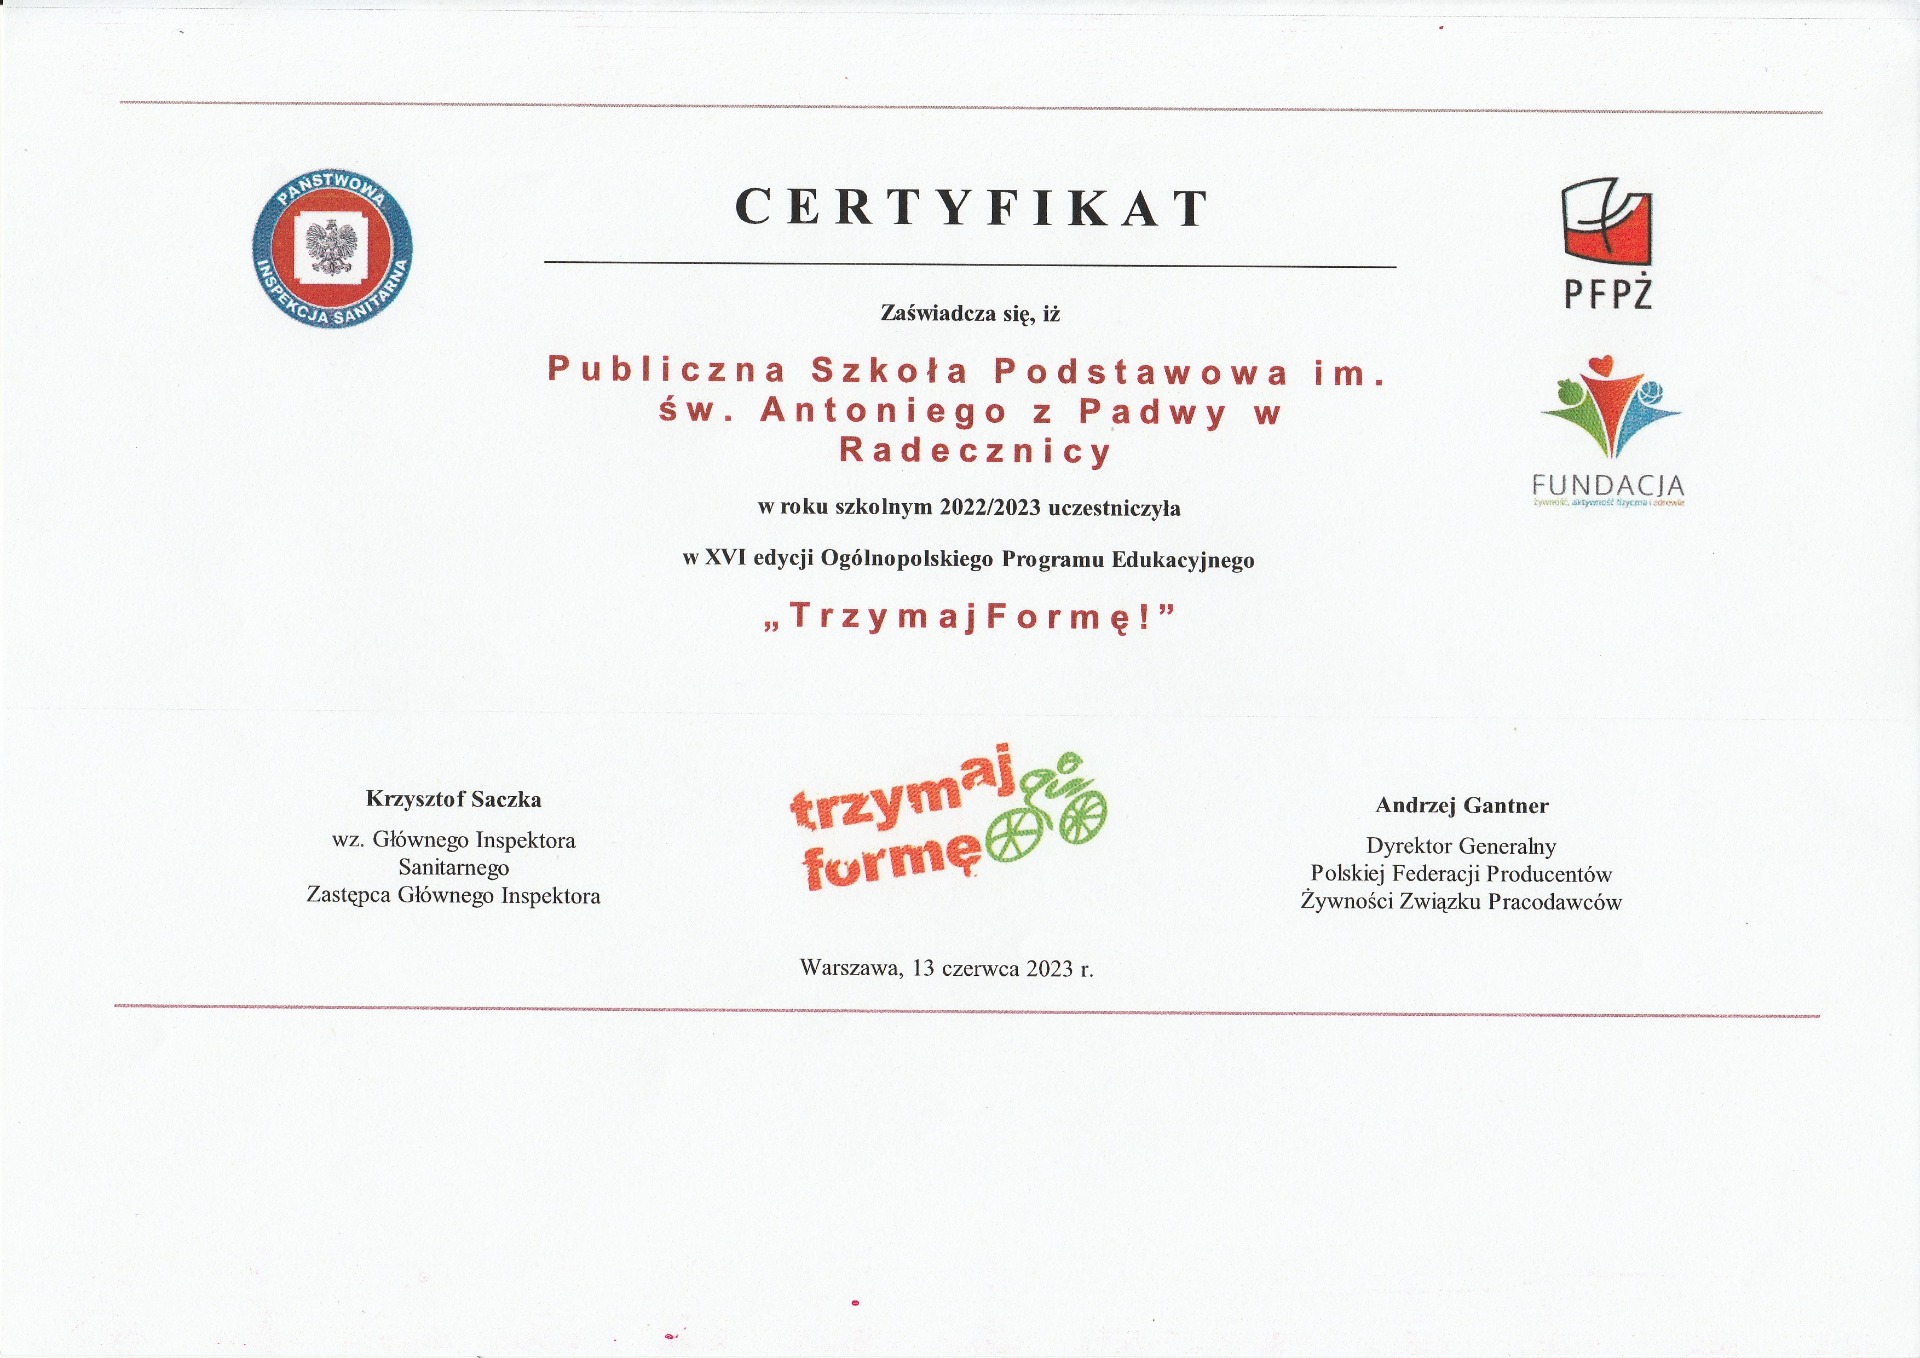 Certyfikat za udział w XVI edycji Ogólnopolskiego Programu Edukacyjnego "Trzymaj formę" - Obrazek 1